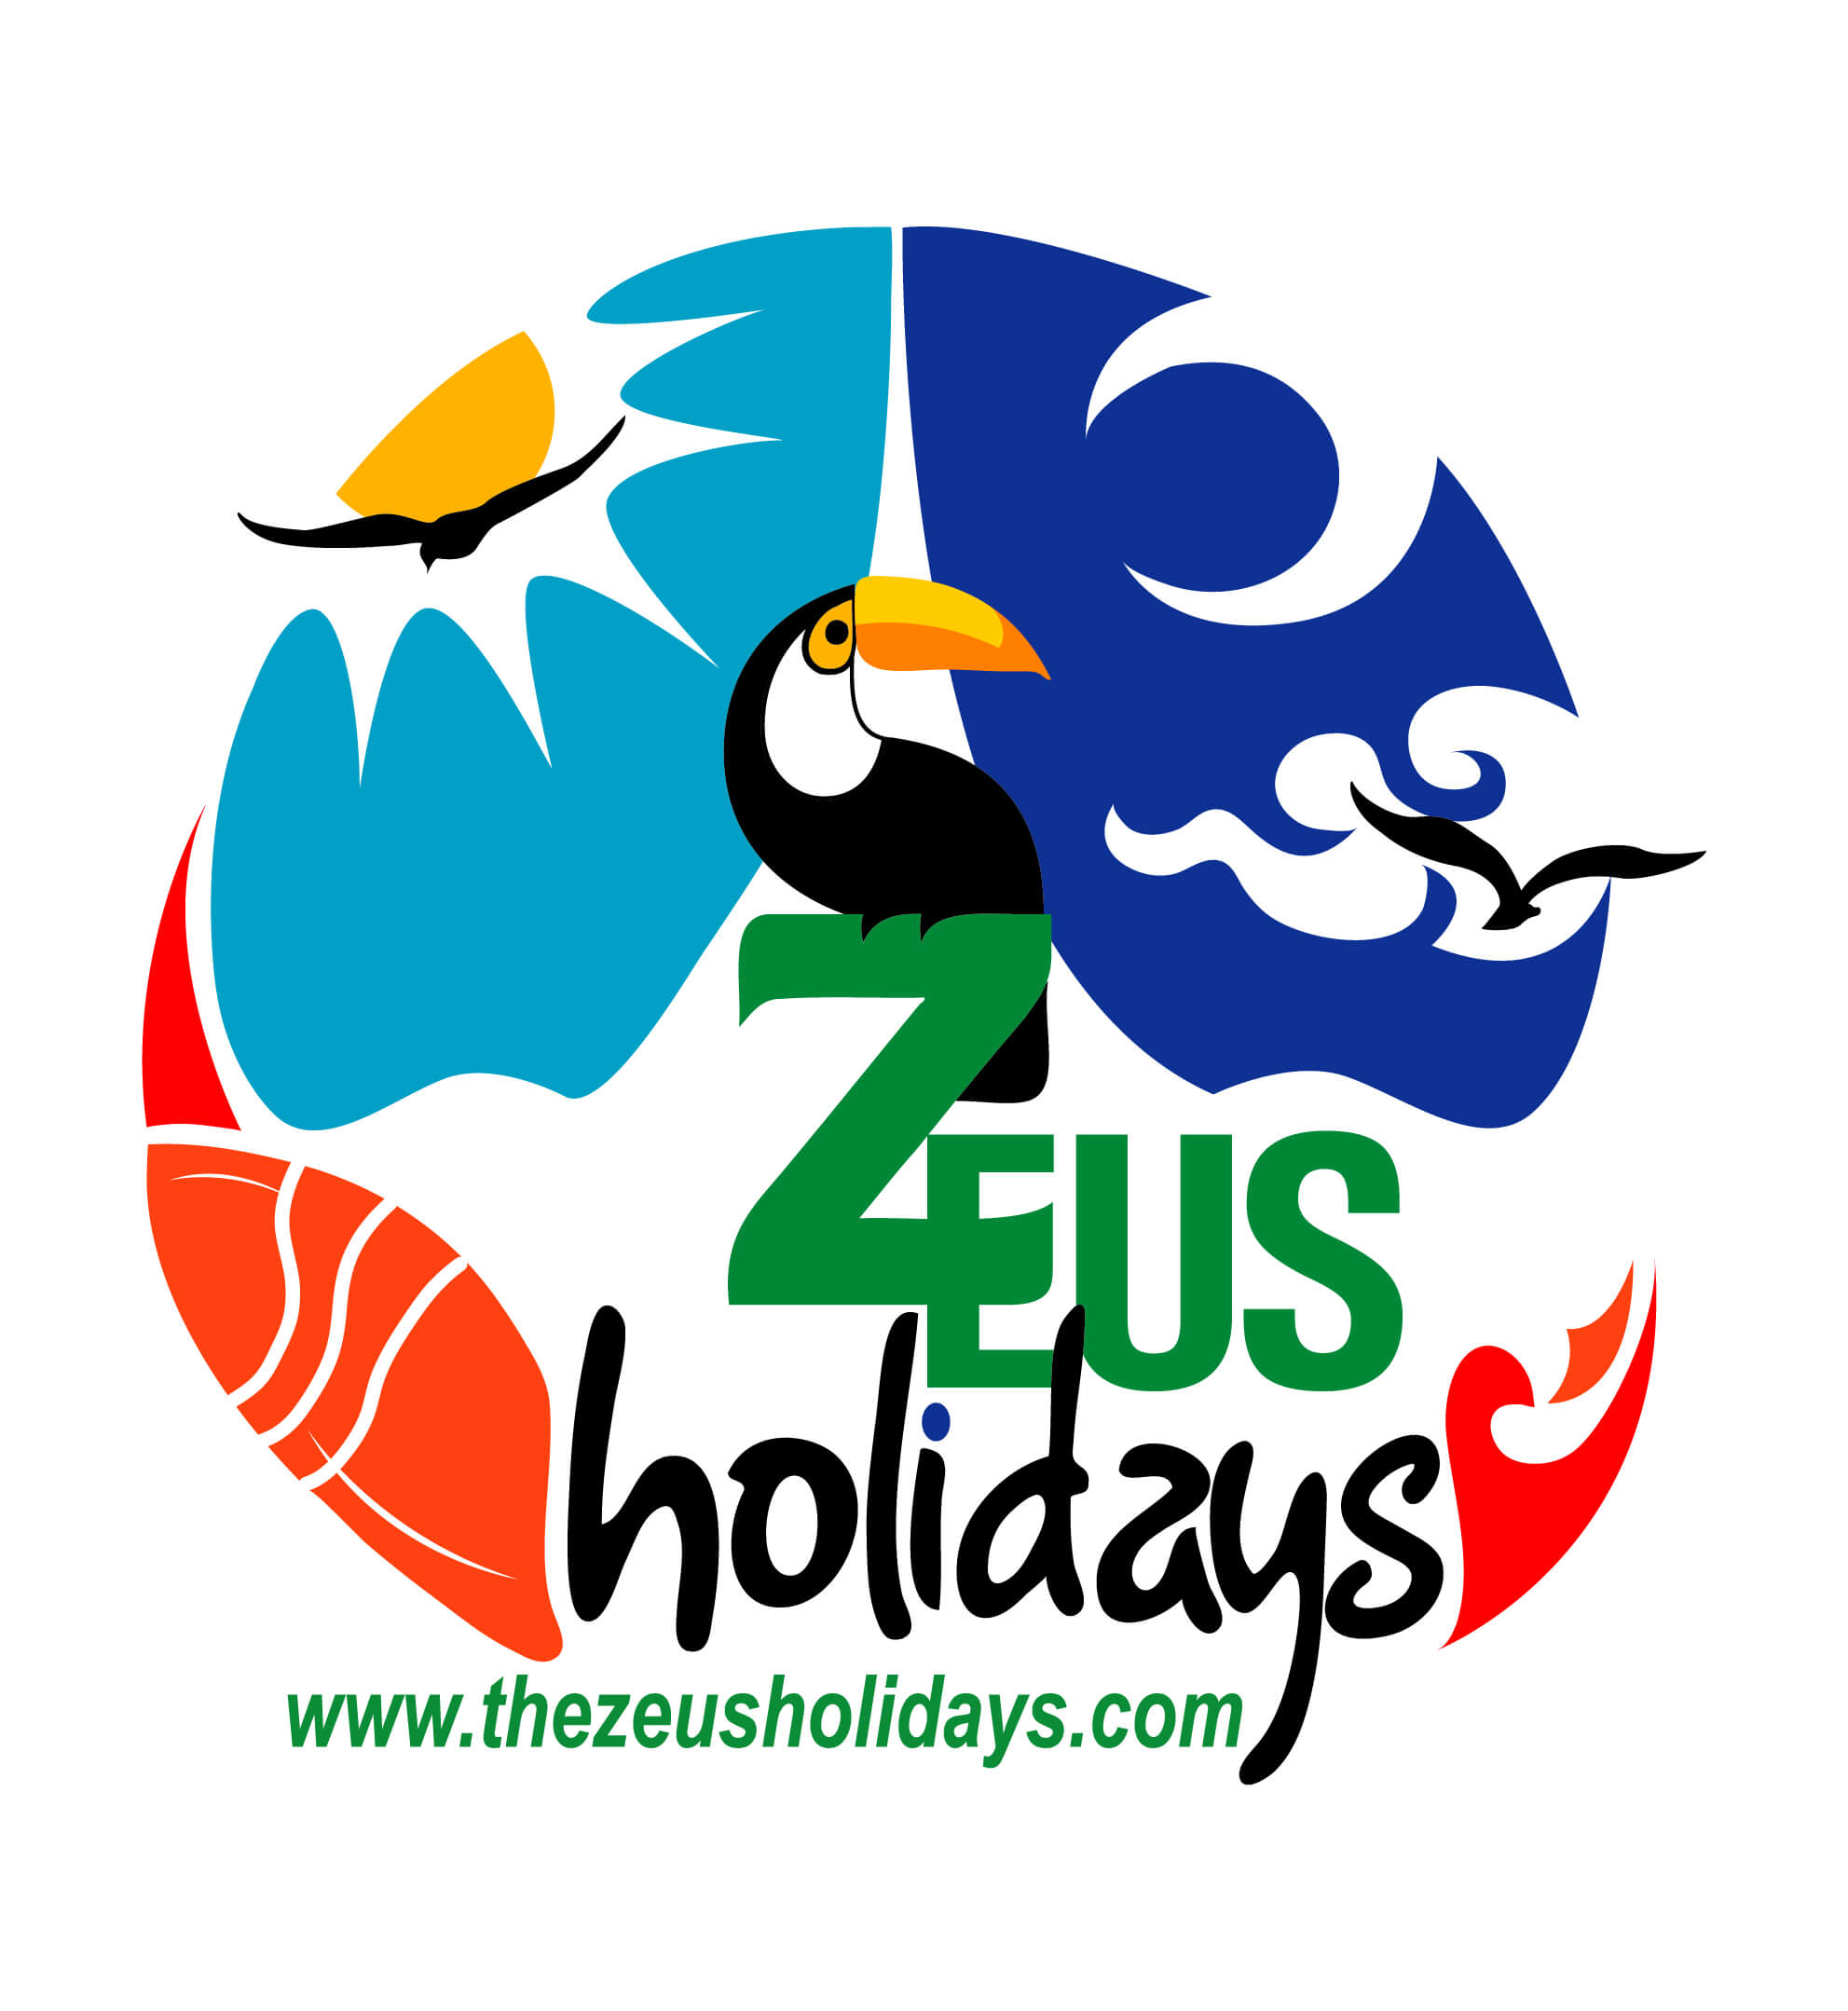 zeus travel agency